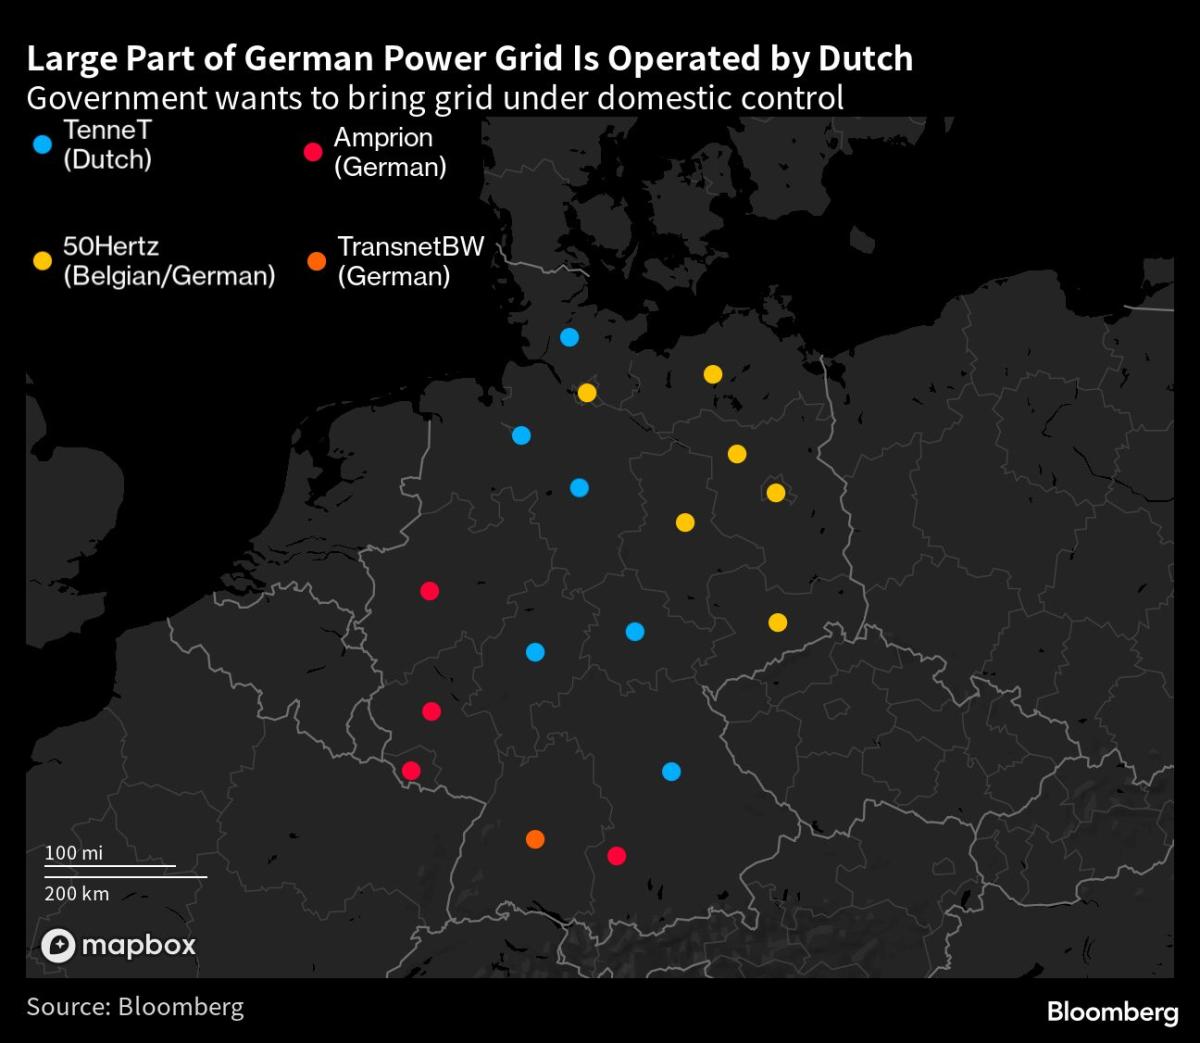 De aankoop van het Duitse TenneT liep vertraging op door de Nederlandse politieke onrust